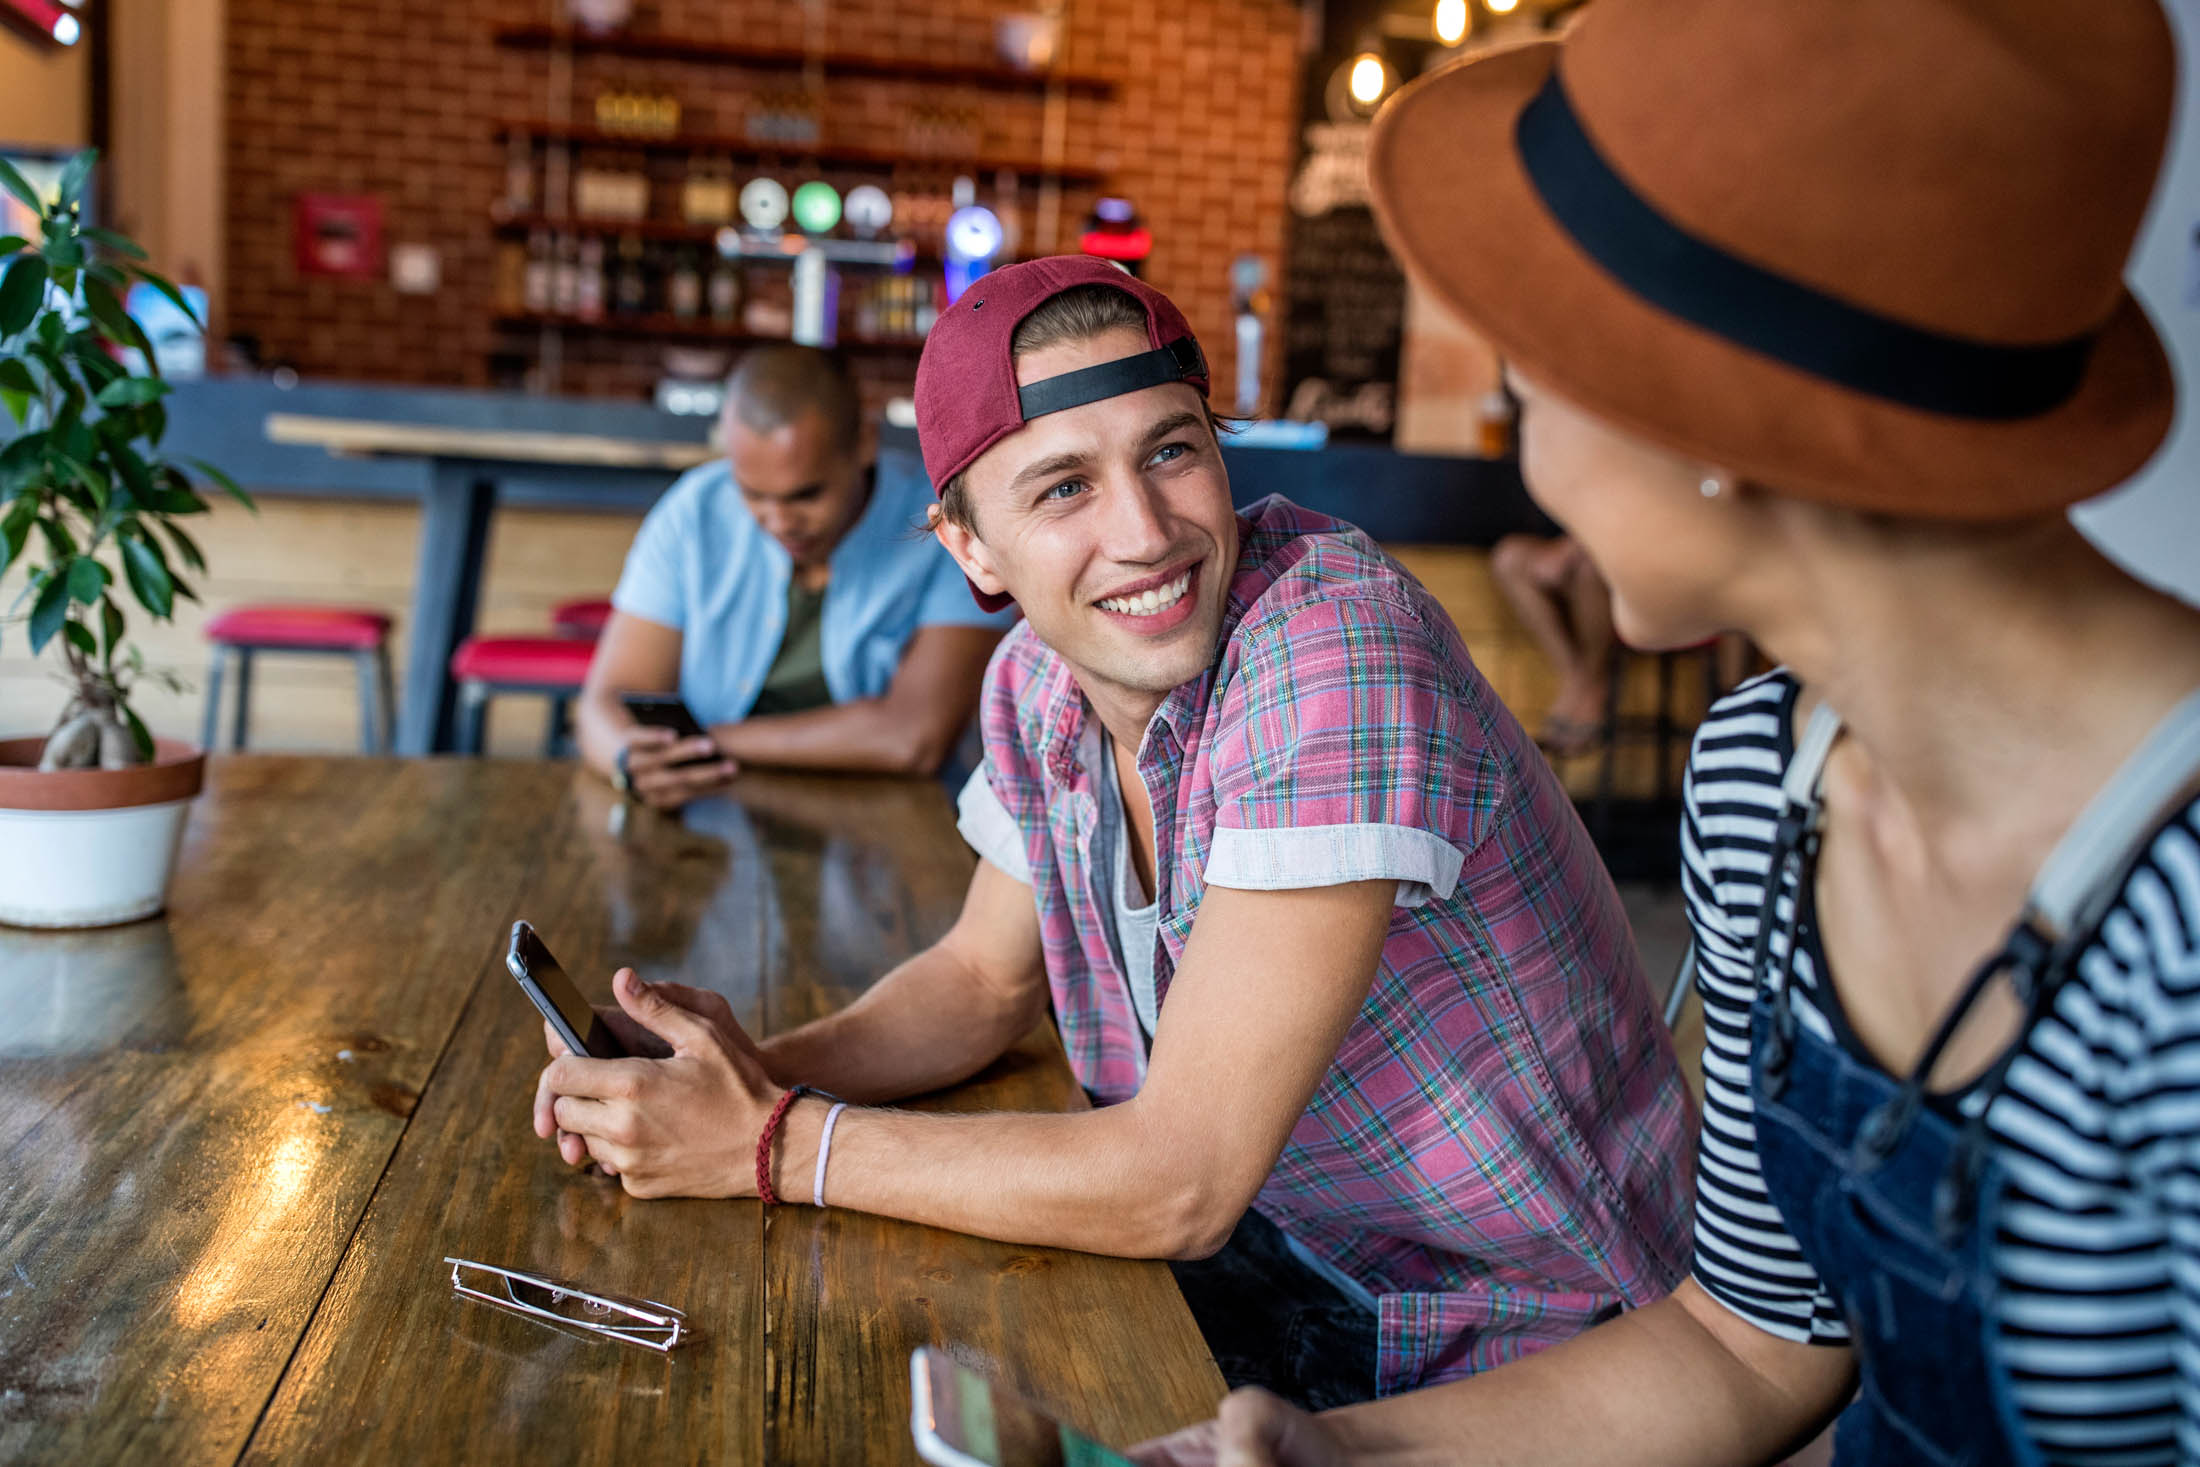 Drei junge Erwachsene sitzen in einem gemütlichen Café an einem Holztisch, plaudern und lächeln. Der junge Mann mit der Mütze hält ein Smartphone in der Hand und unterhält sich angeregt mit einer Frau neben ihm. © Fotografie Tomas Rodriguez